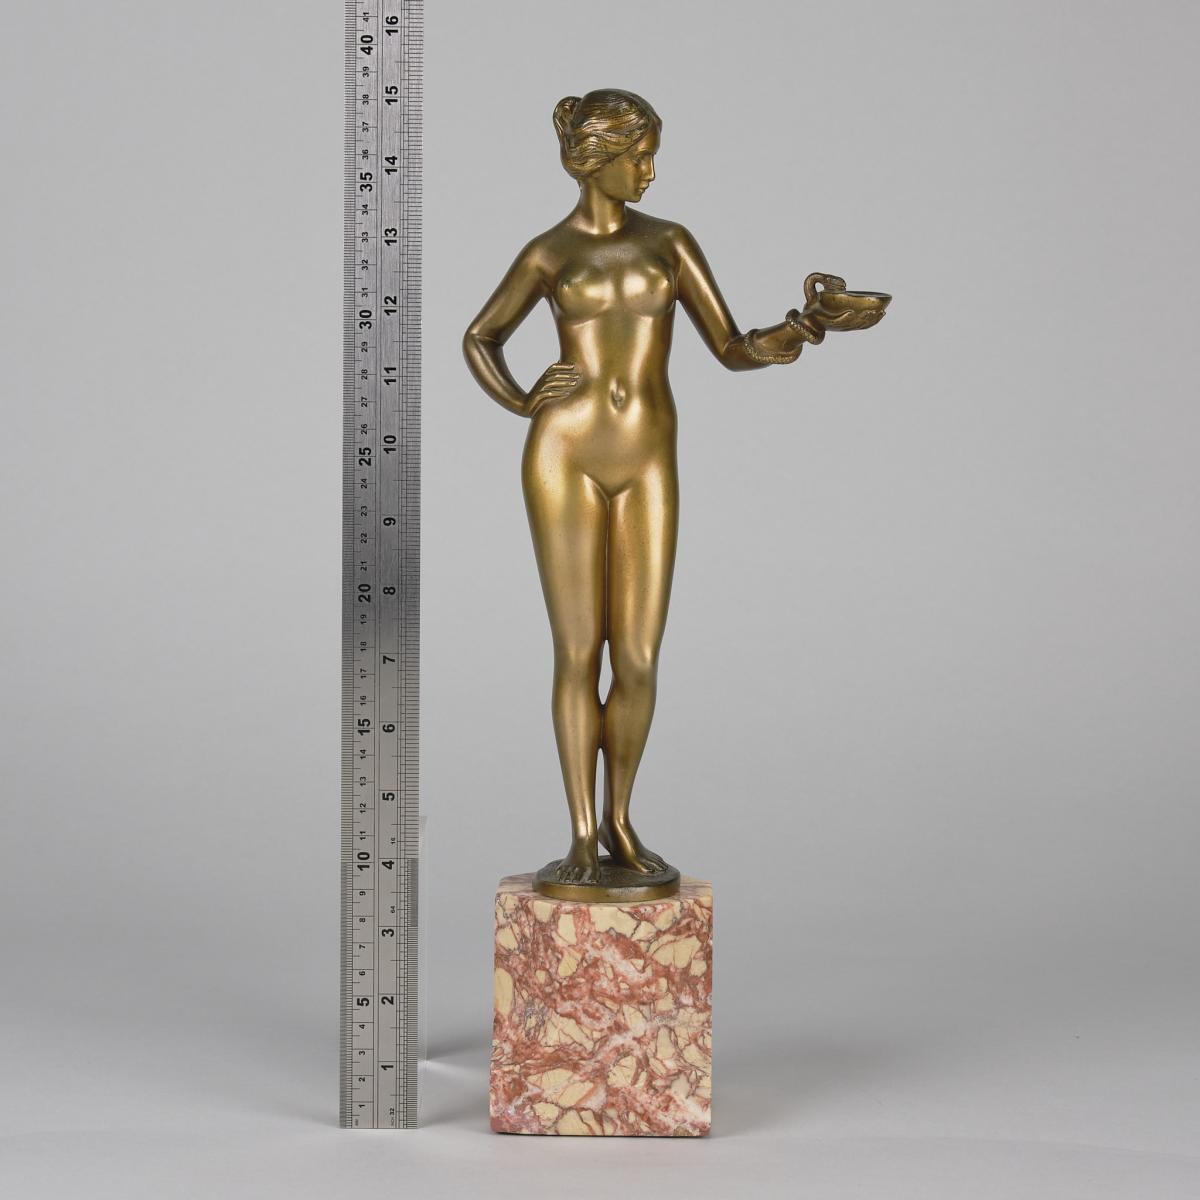 Art Nouveau Bronze Sculpture Entitled "Cleopatra and Asp" by Schnauder